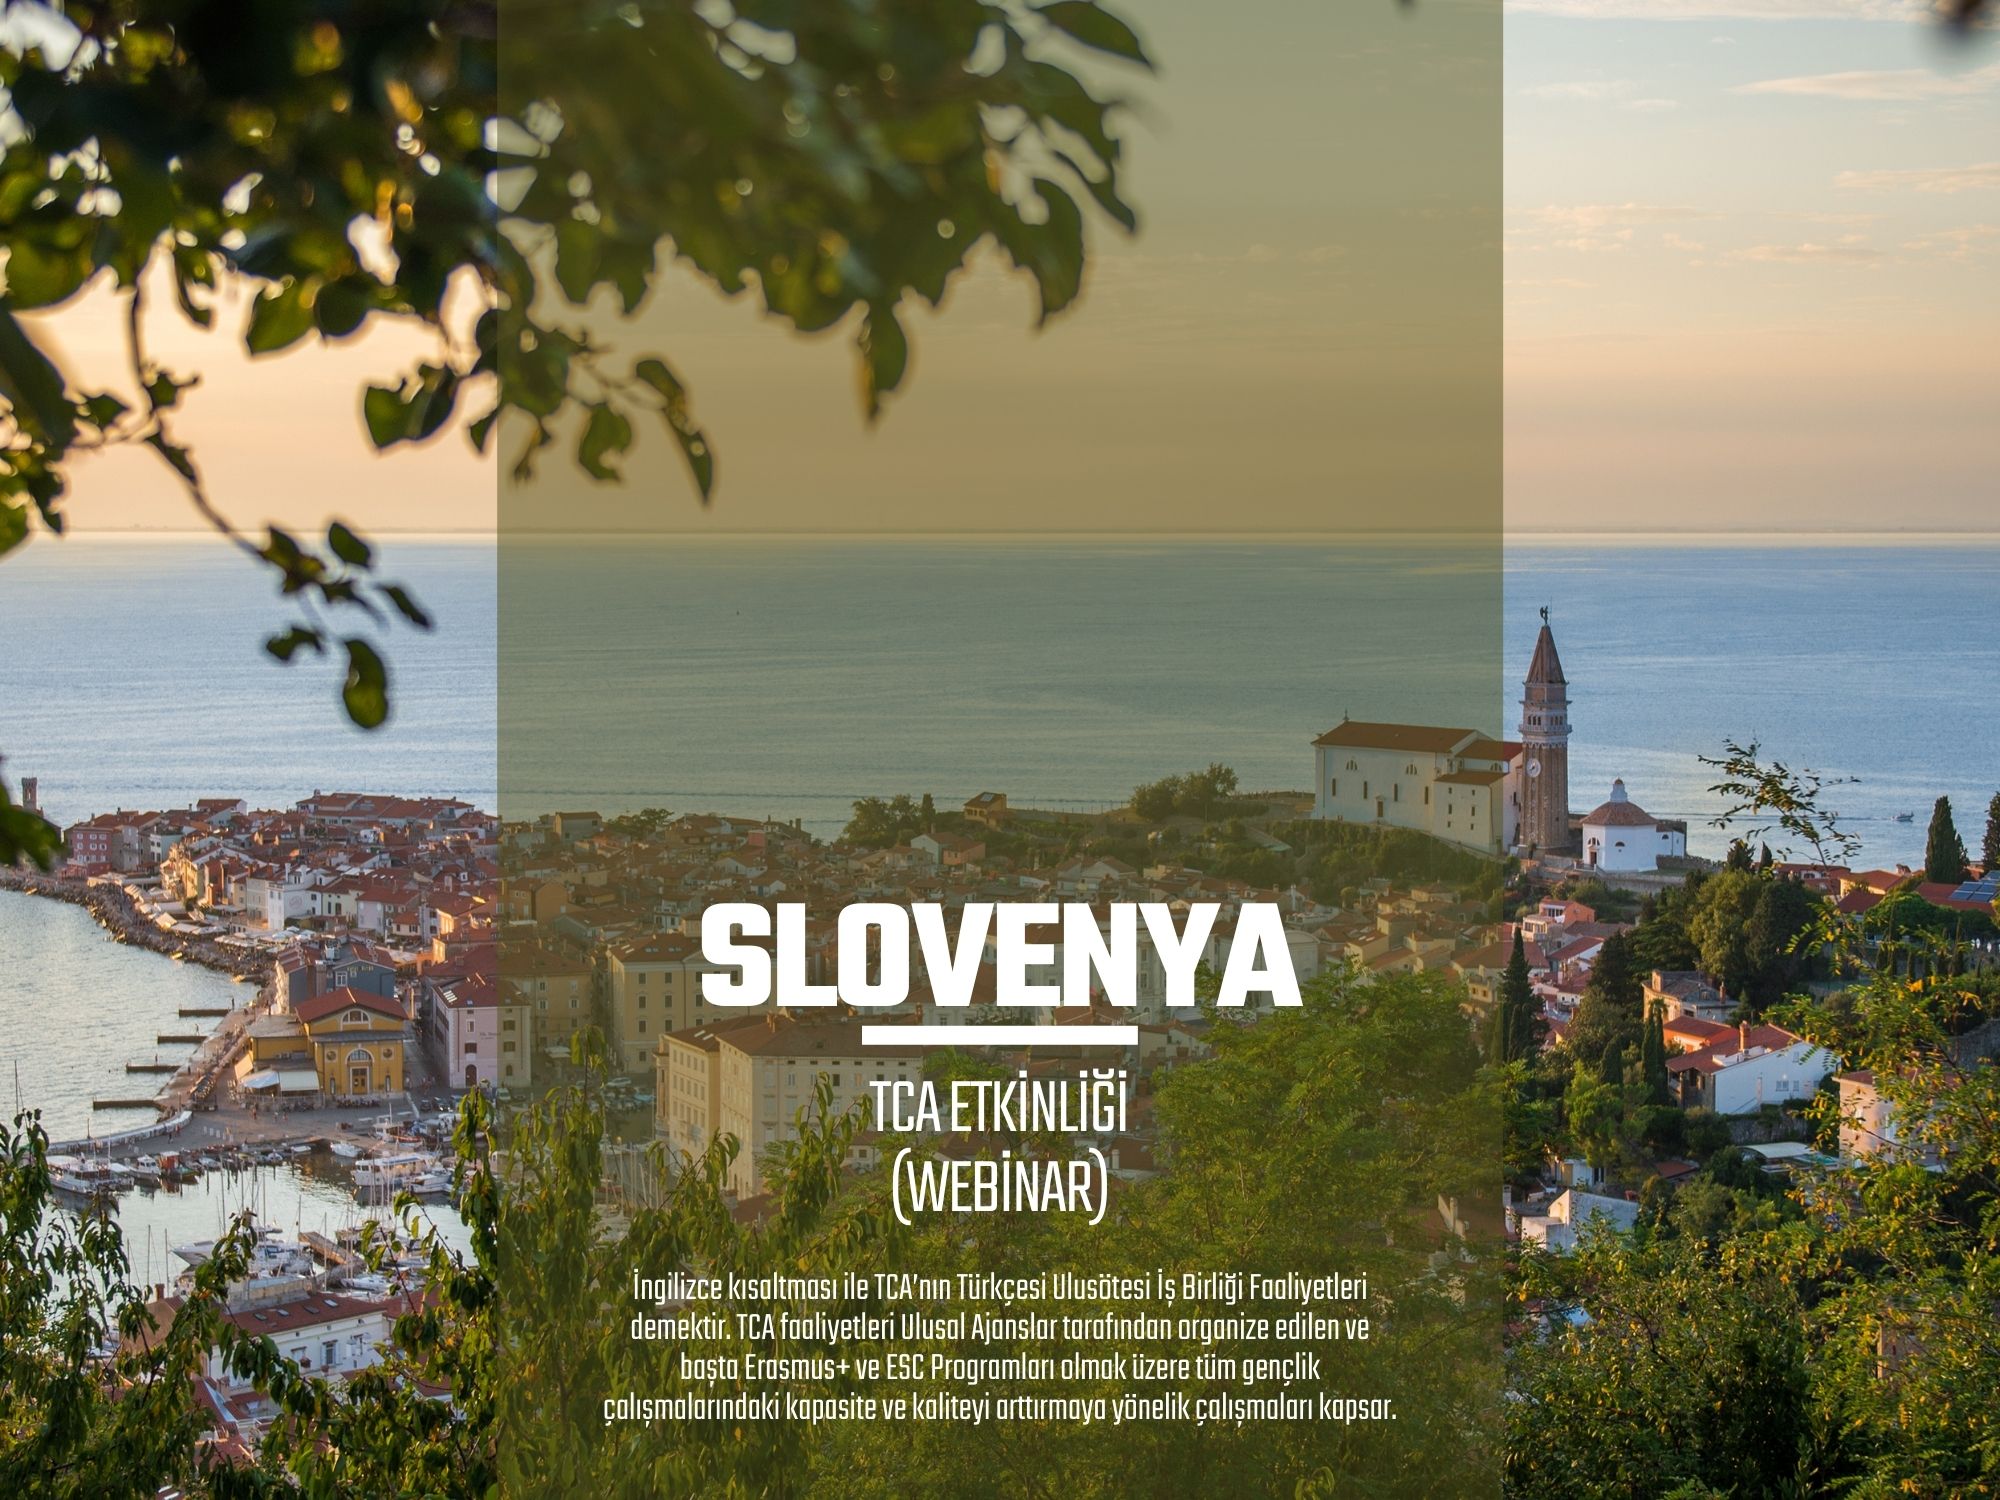 SLOVENYA ERASMUS+ TCA ETKİNLİĞİ (WEBİNAR) – 1 GÜN